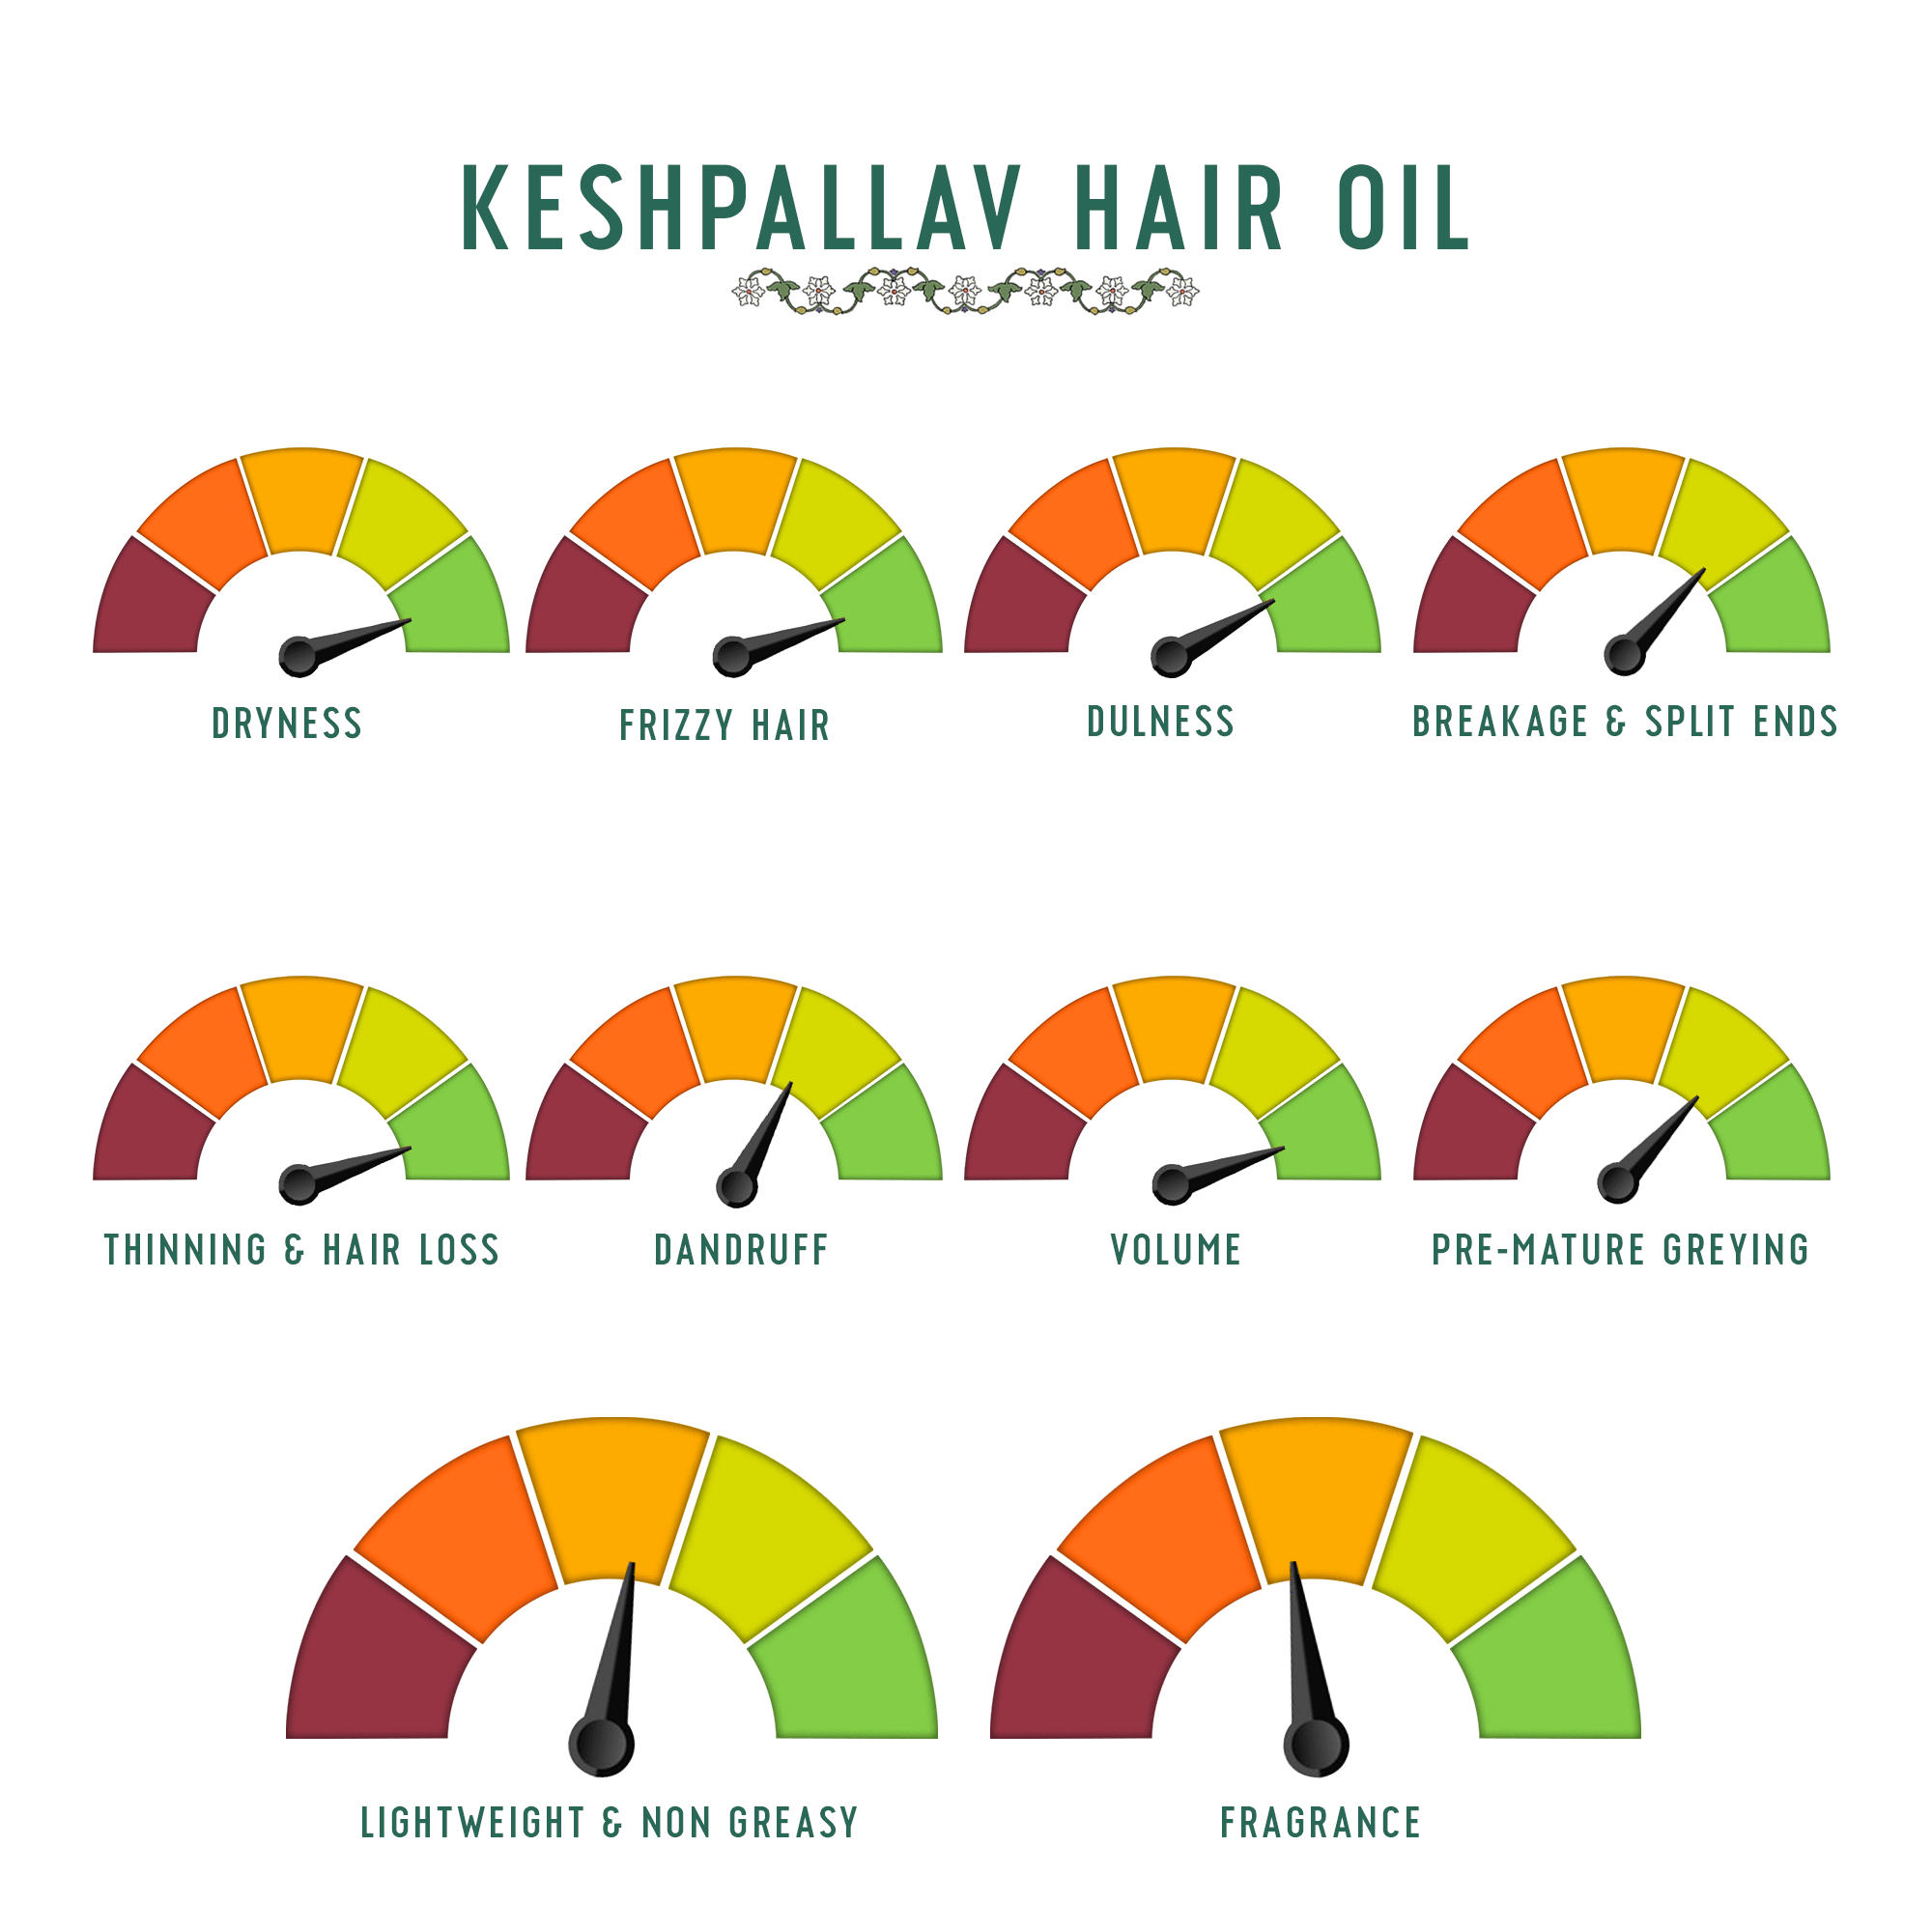 Keshpallav Hair Oil for Hair Growth